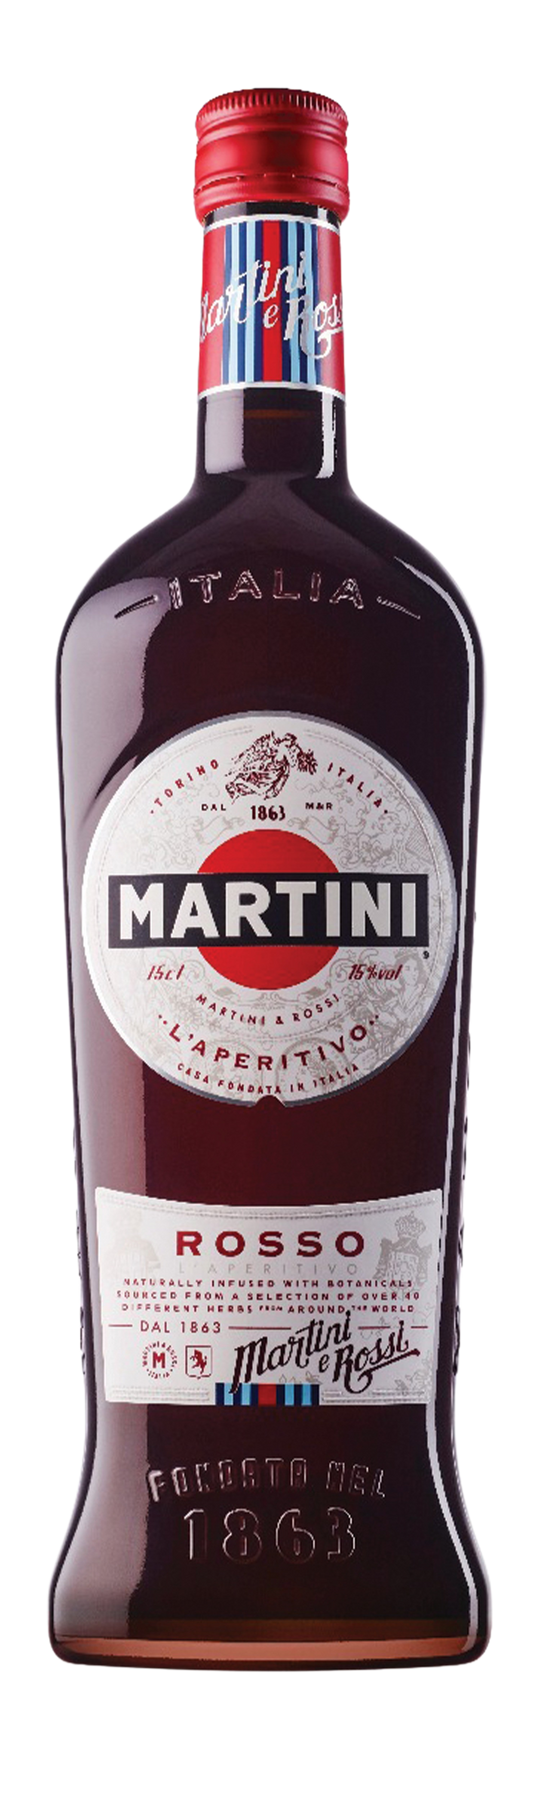 Martini Rosso 15% 75cl